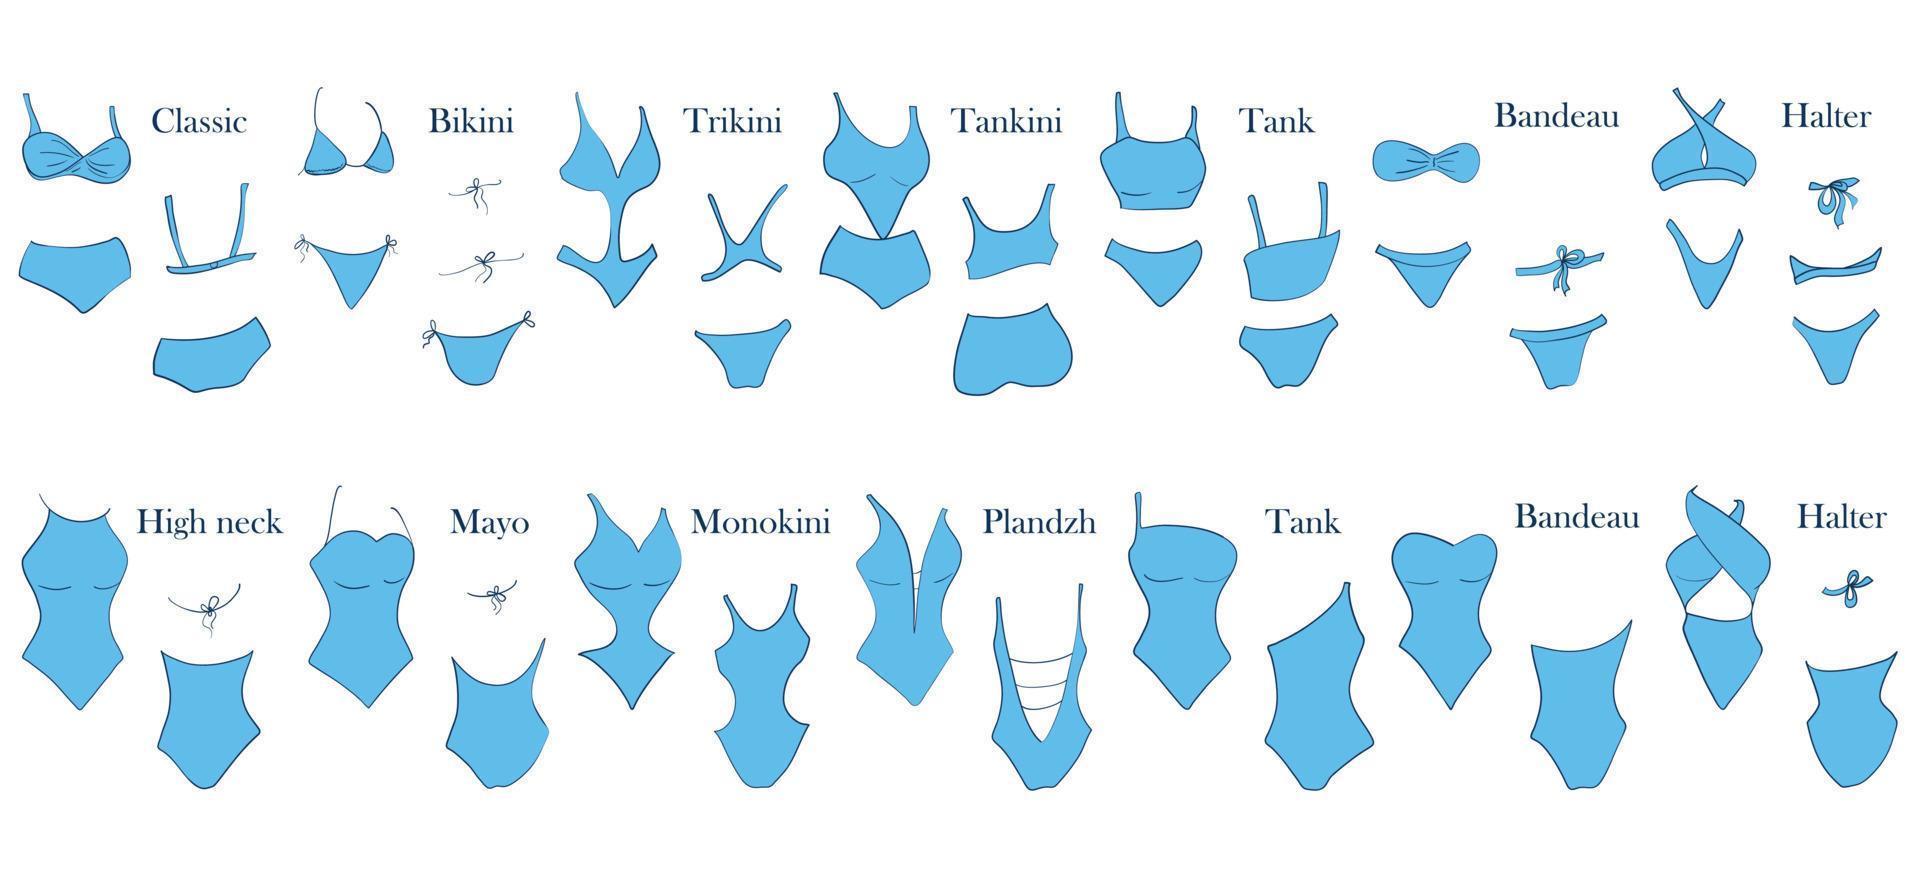 soorten badkleding voor dames. illustratie van een eendelig en een tweedelig badpak met een naam en een voorbeeld van een achter- en vooraanzicht. vector